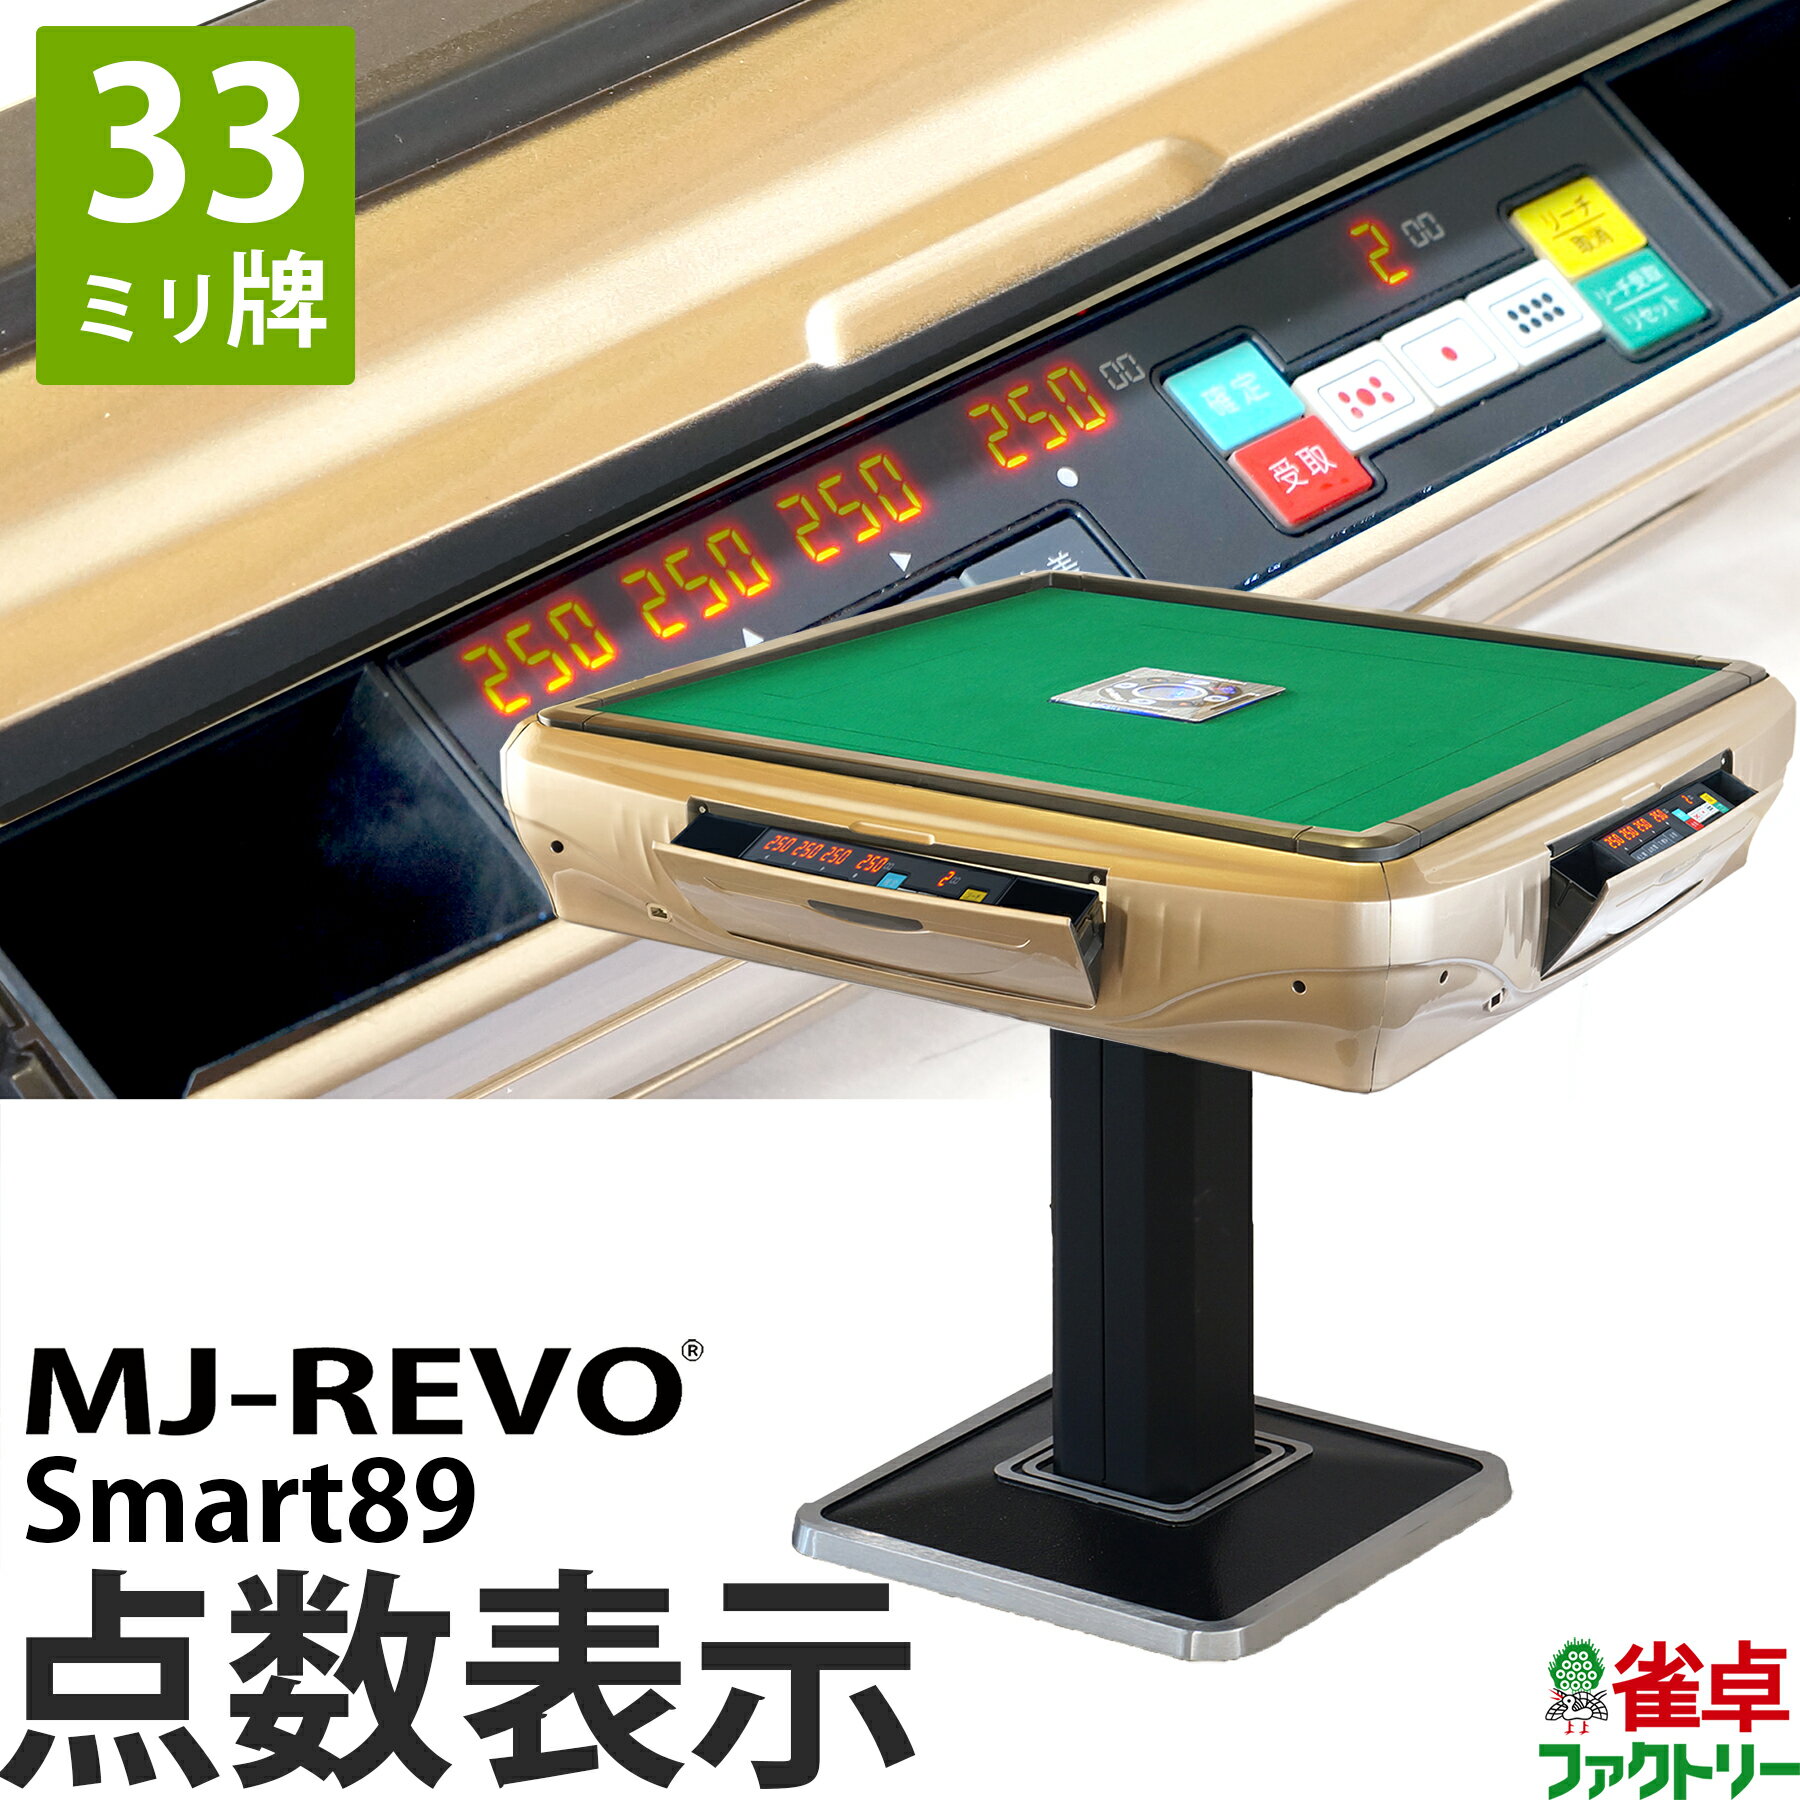 全自動麻雀卓 点数表示 MJ-REVO Smart89 33ミリ牌 3年保証 静音タイプ スマート 日本仕様 雀卓 麻雀牌 ゴールド